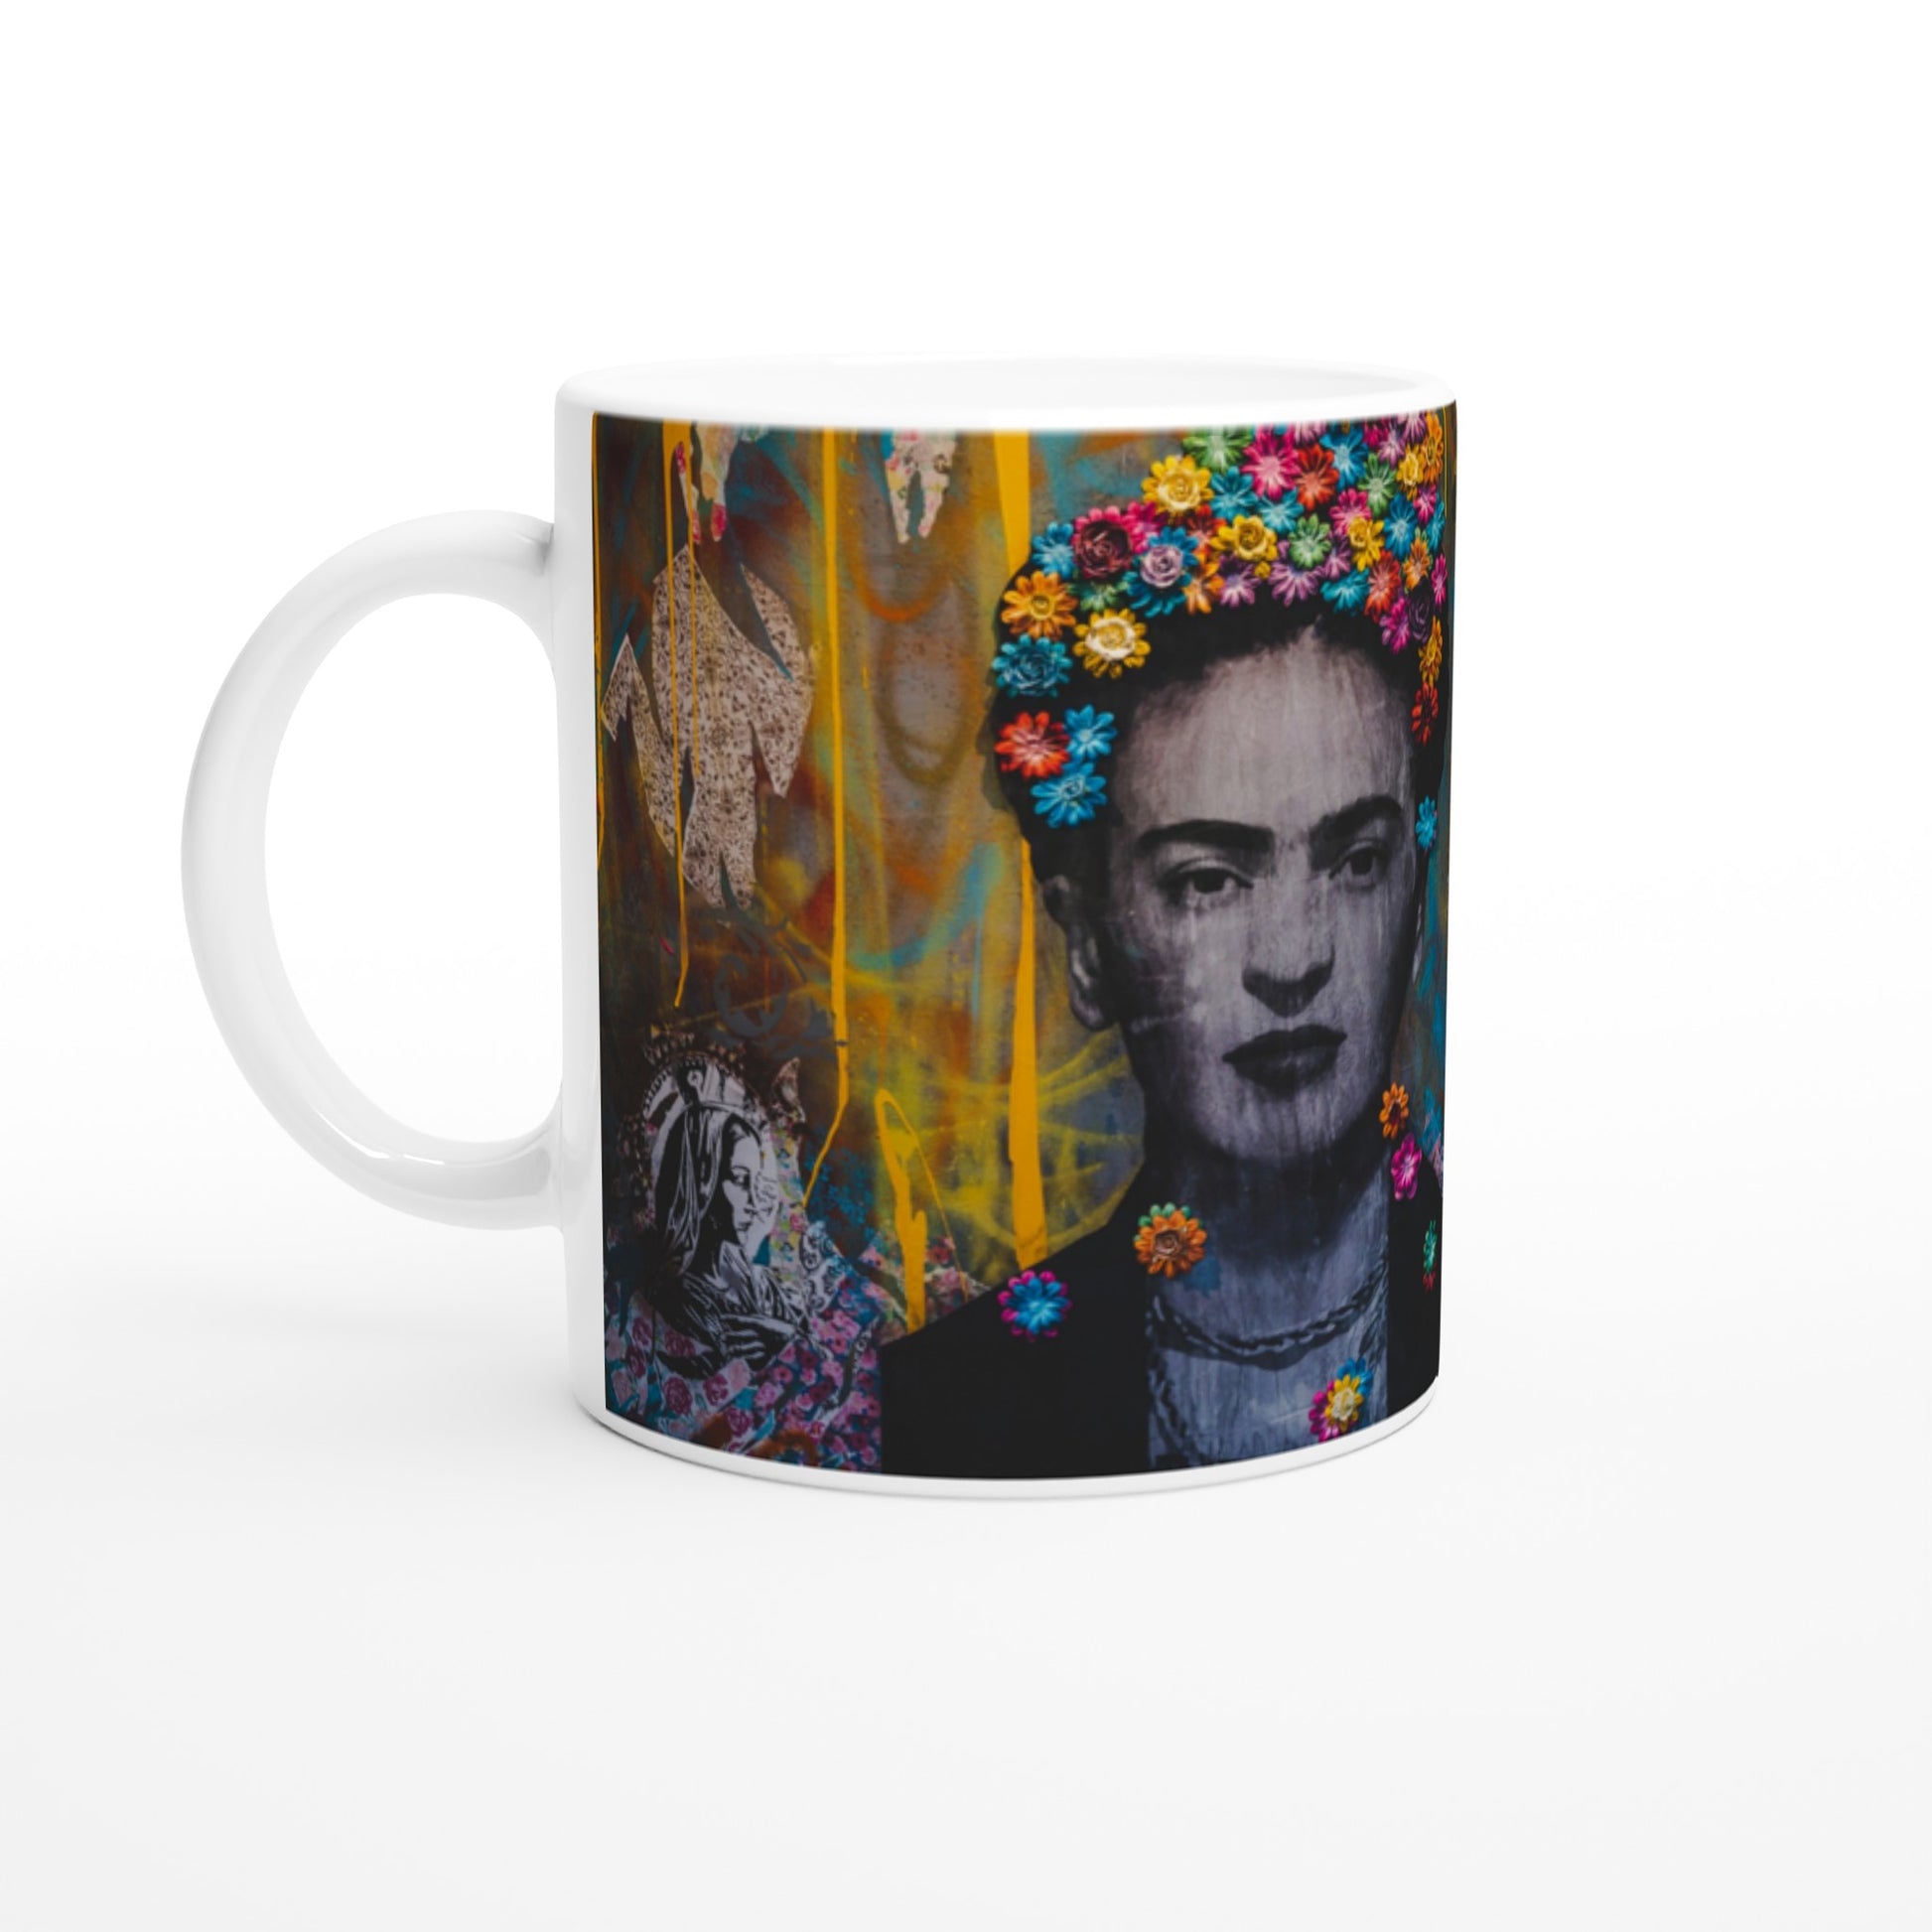 Taza desayuno con rostro de Frida Kahlo